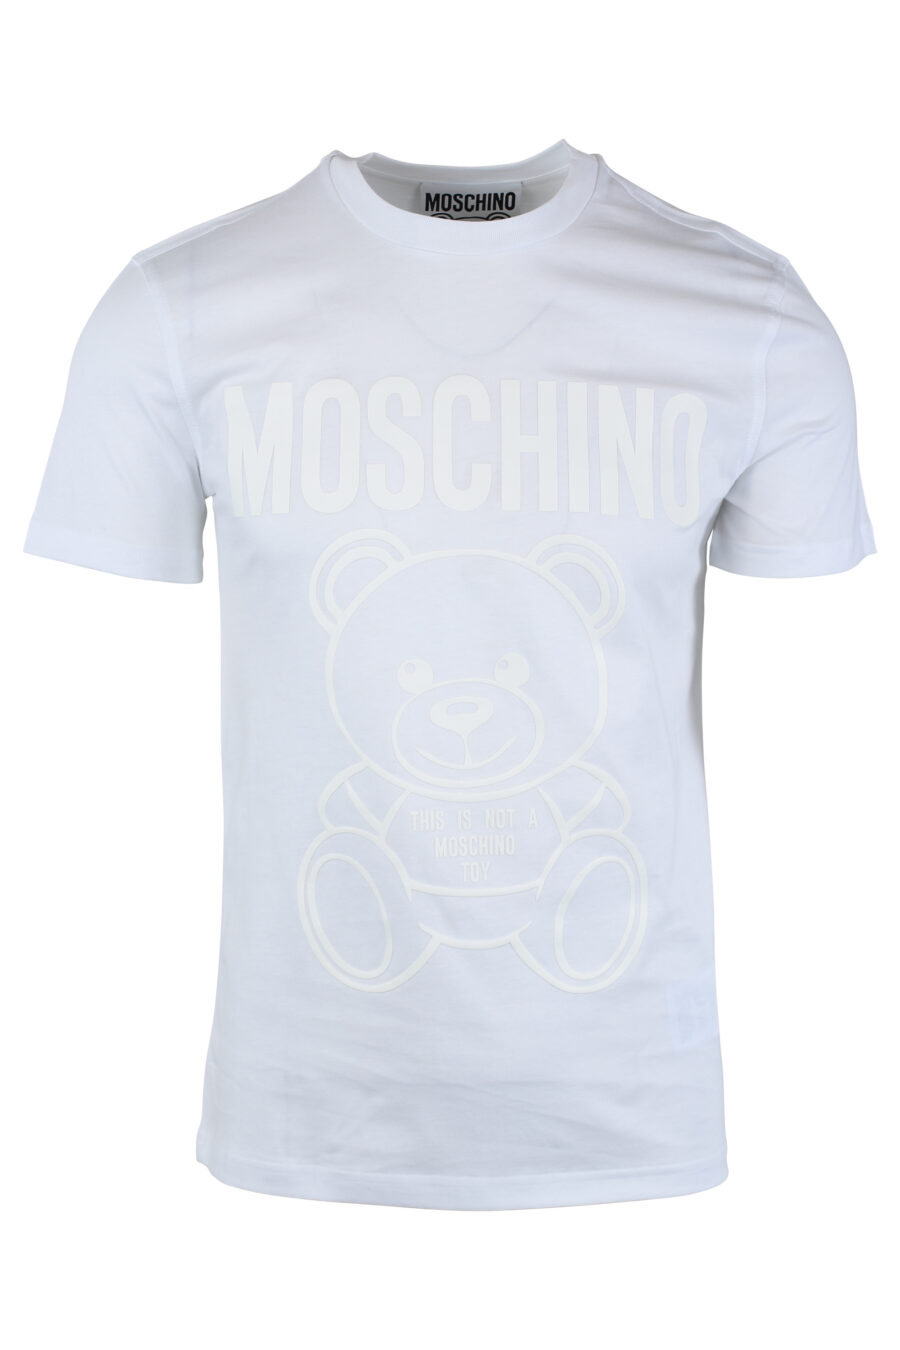 Camiseta blanca con maxilogo oso monocromático - IMG 1657